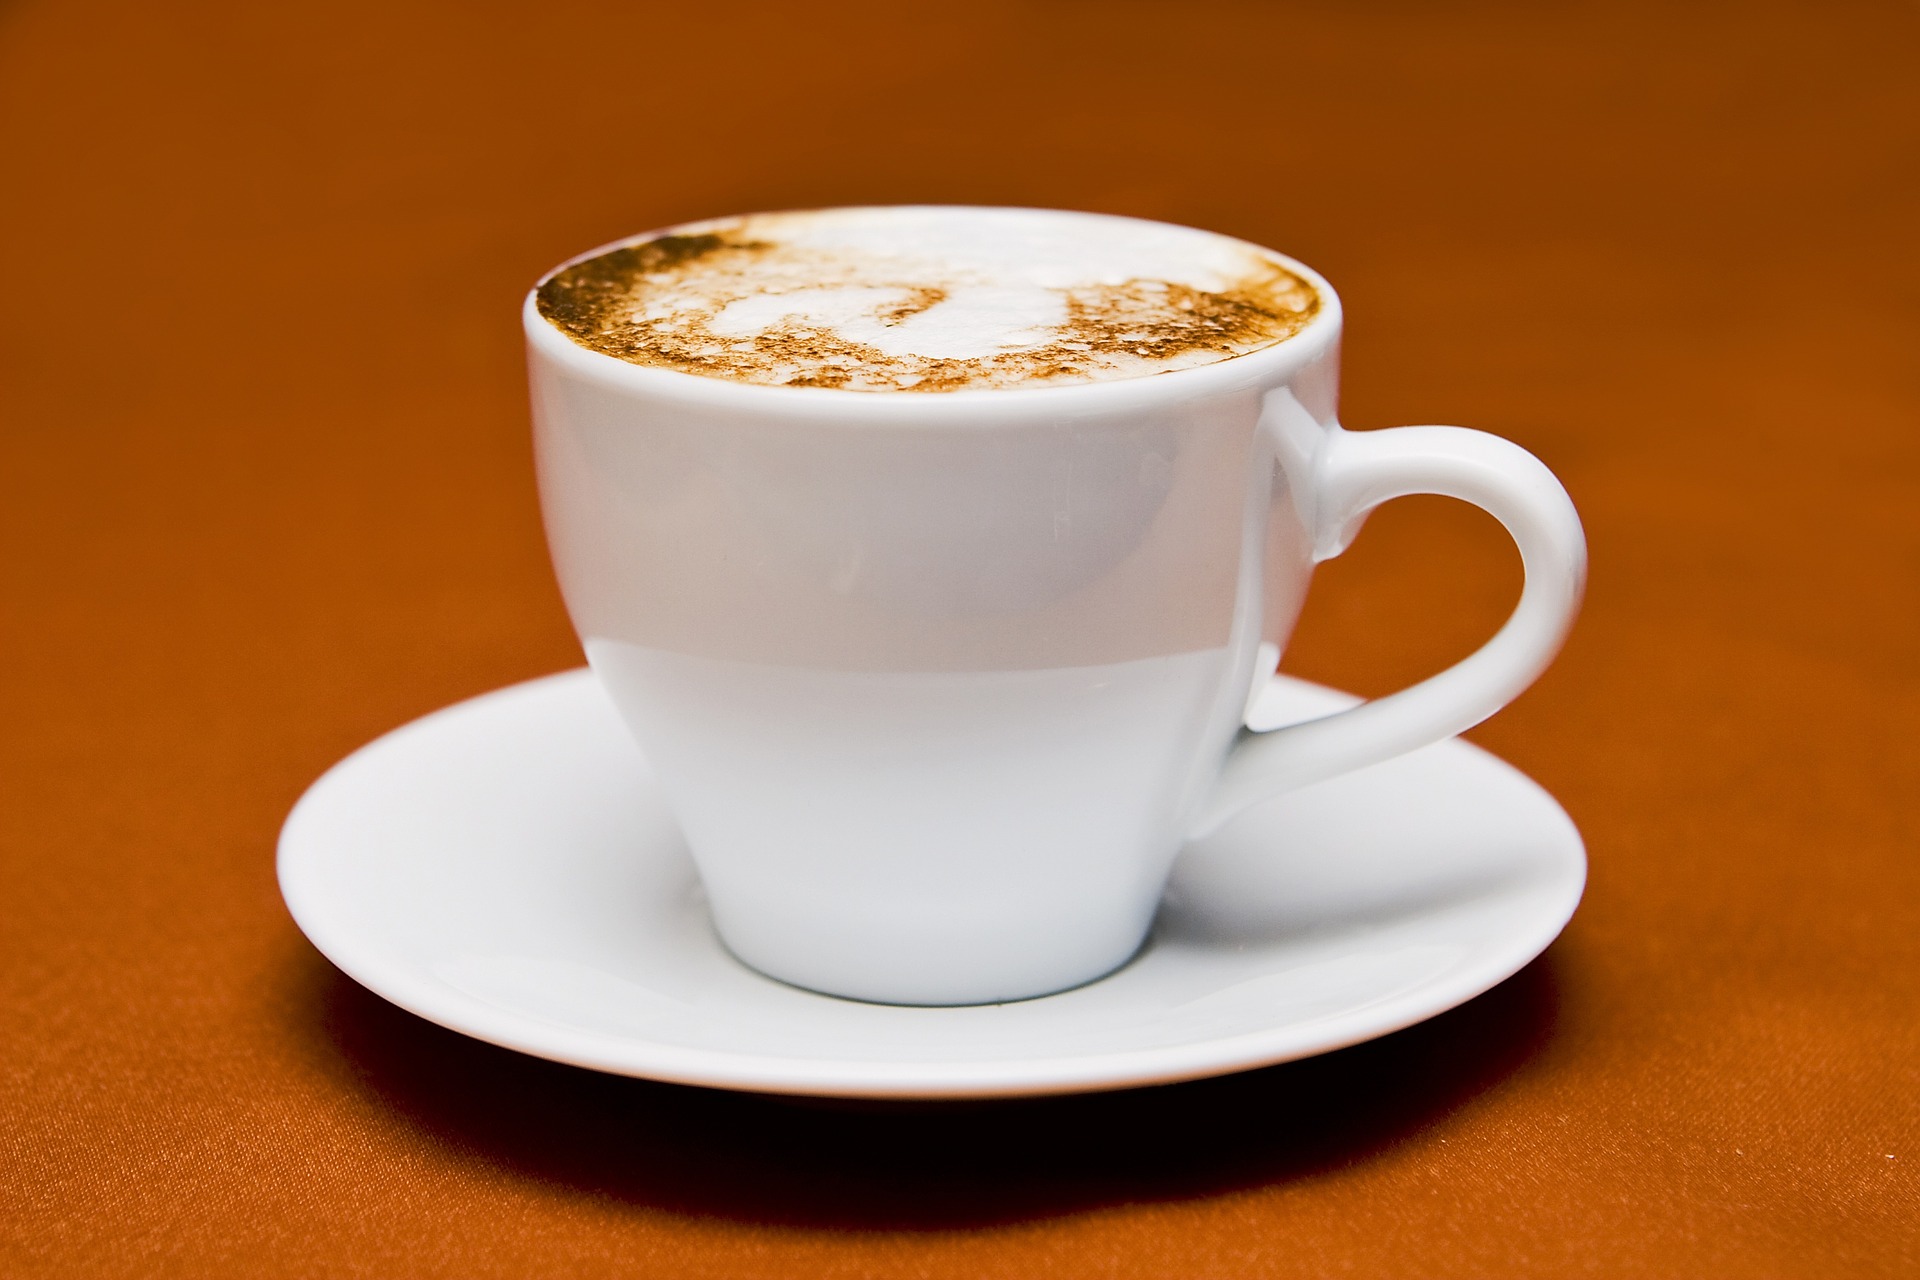 cappuccino-756490_1920 (c) Bild von gadost0 auf Pixabay